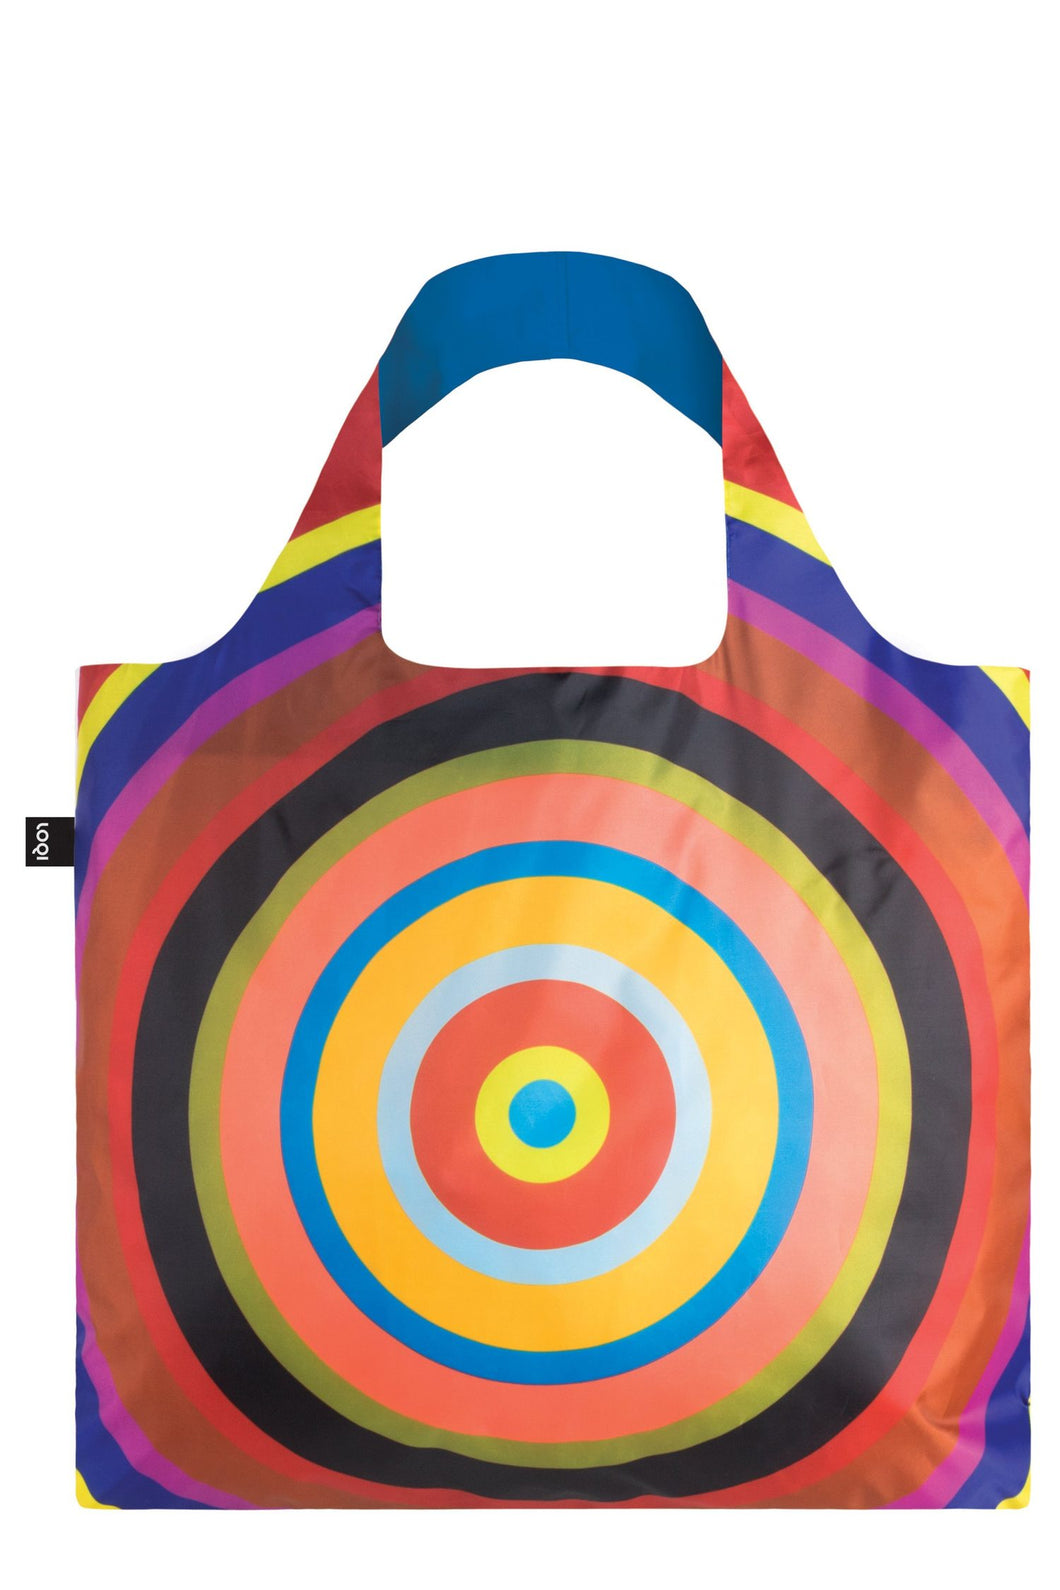 Tote Bag -Target by Paul Gernes